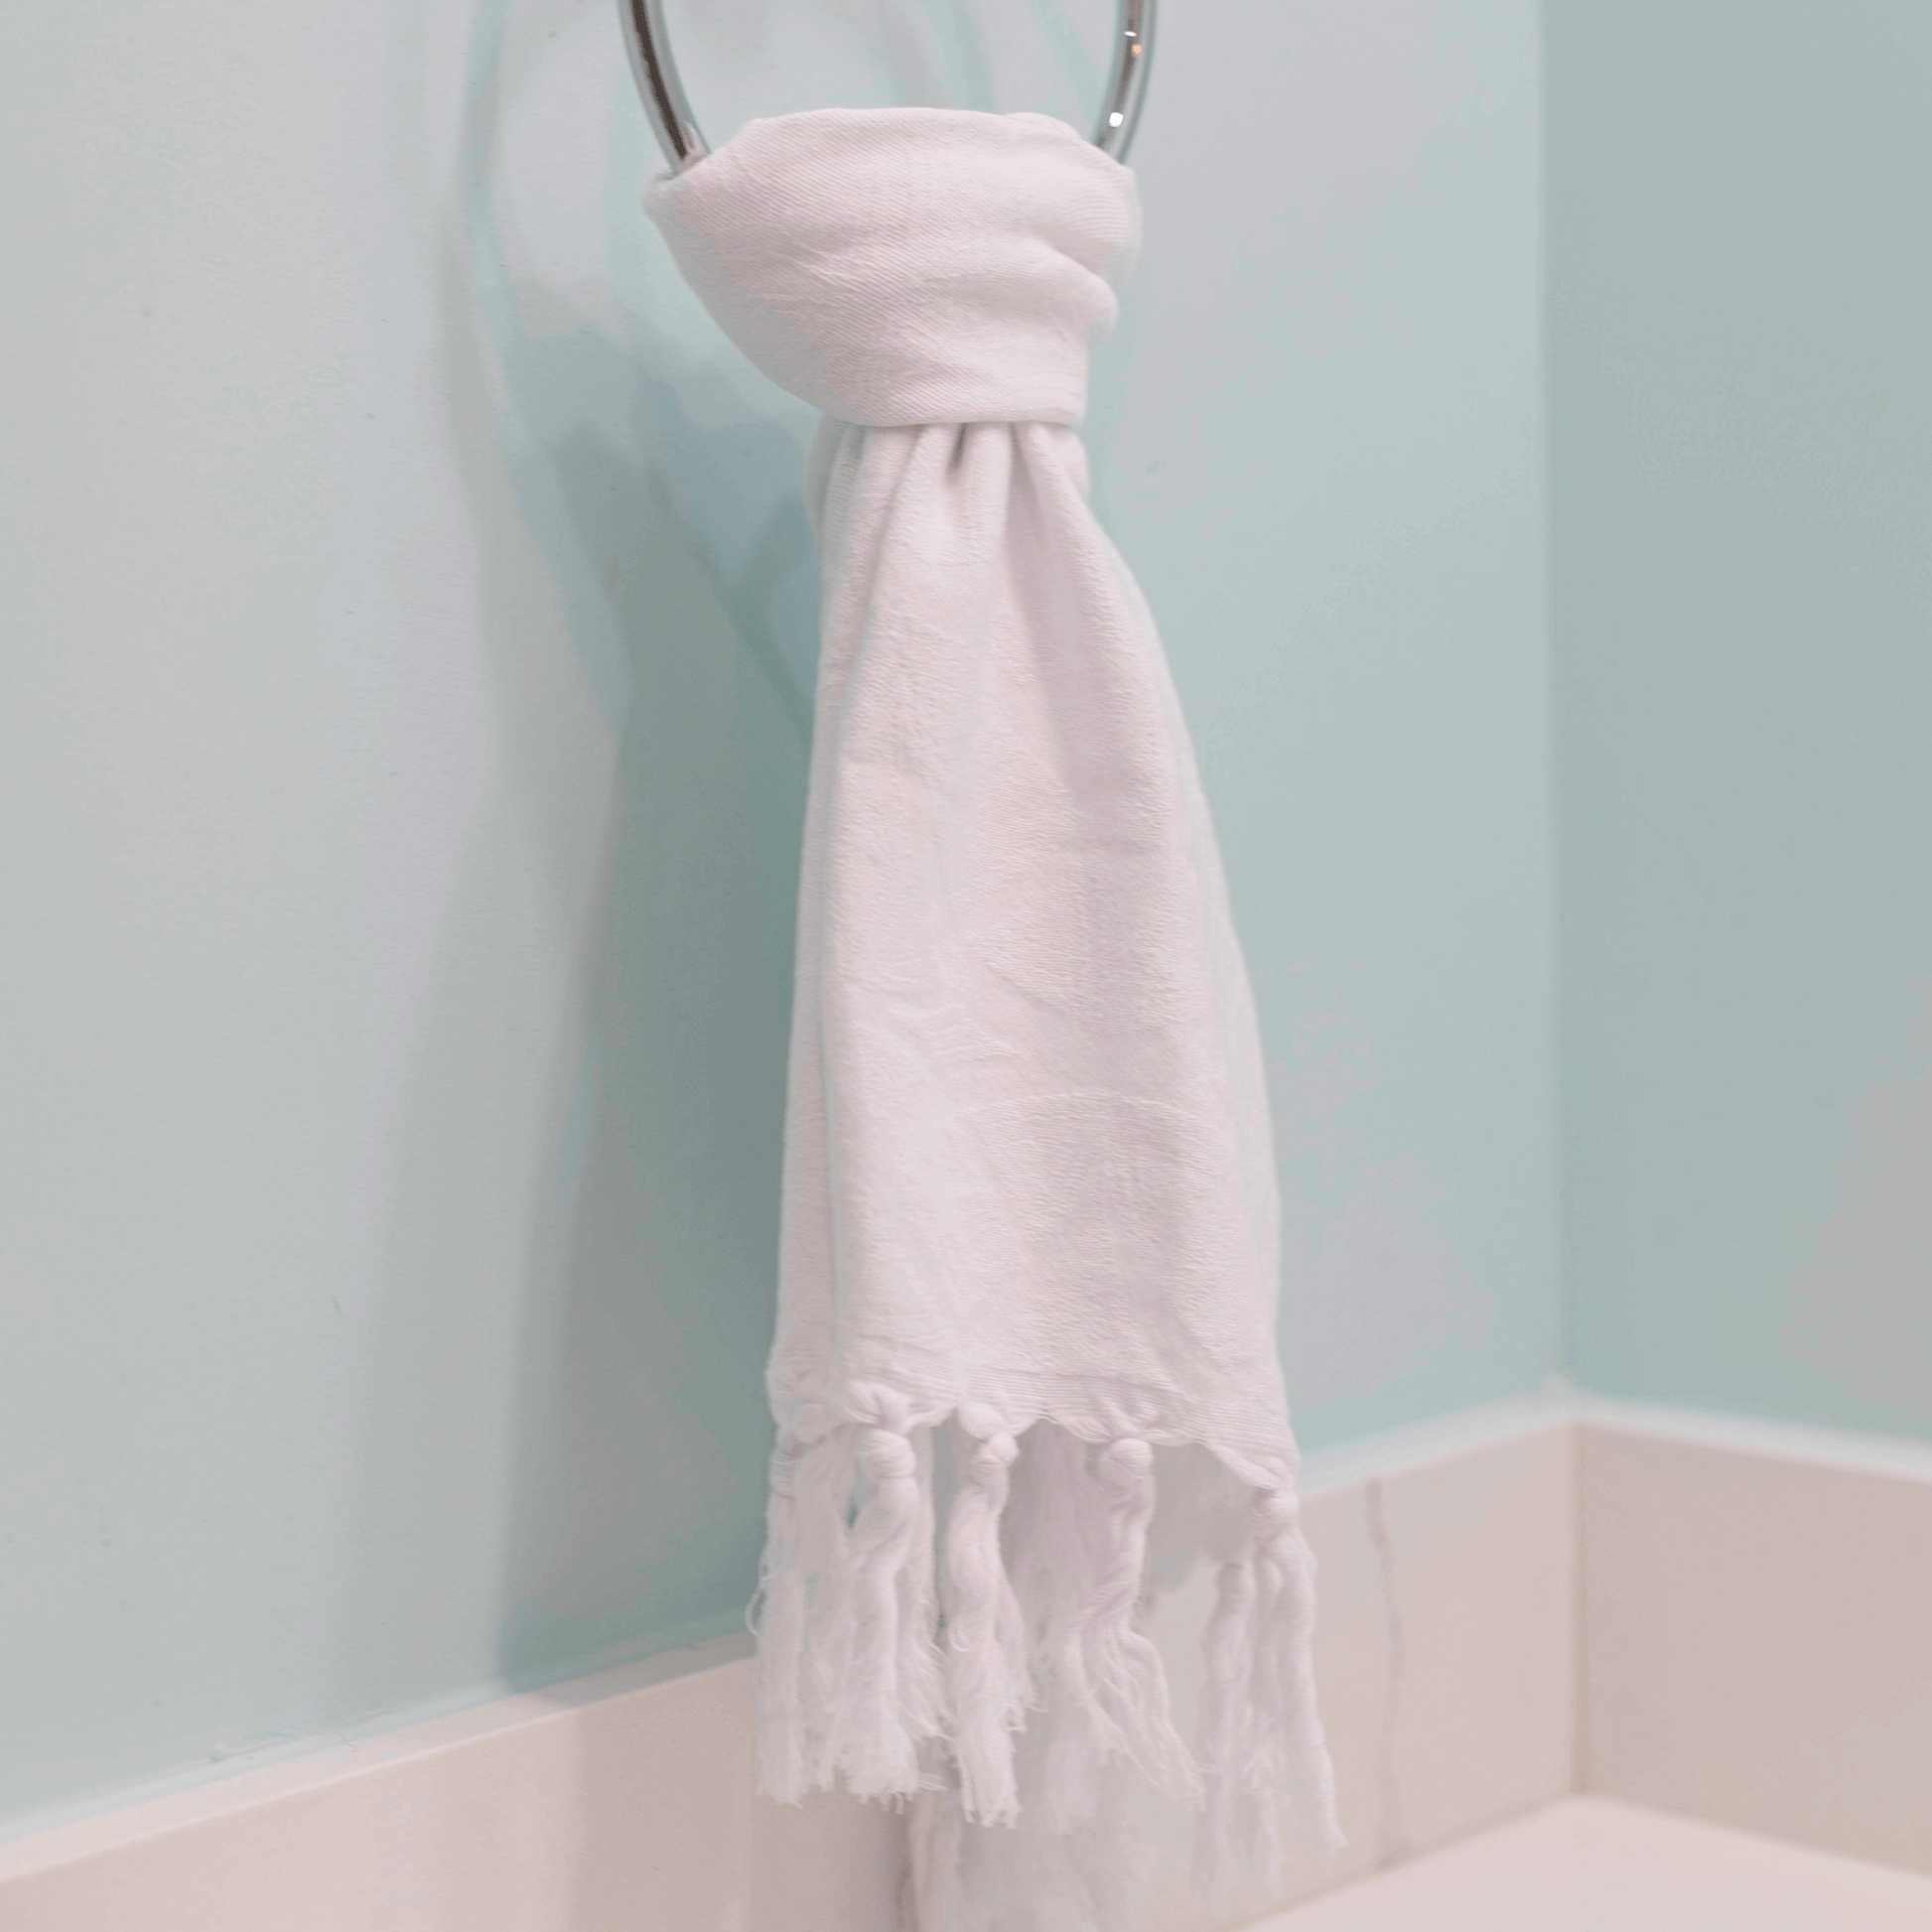 White Turkish hand towel